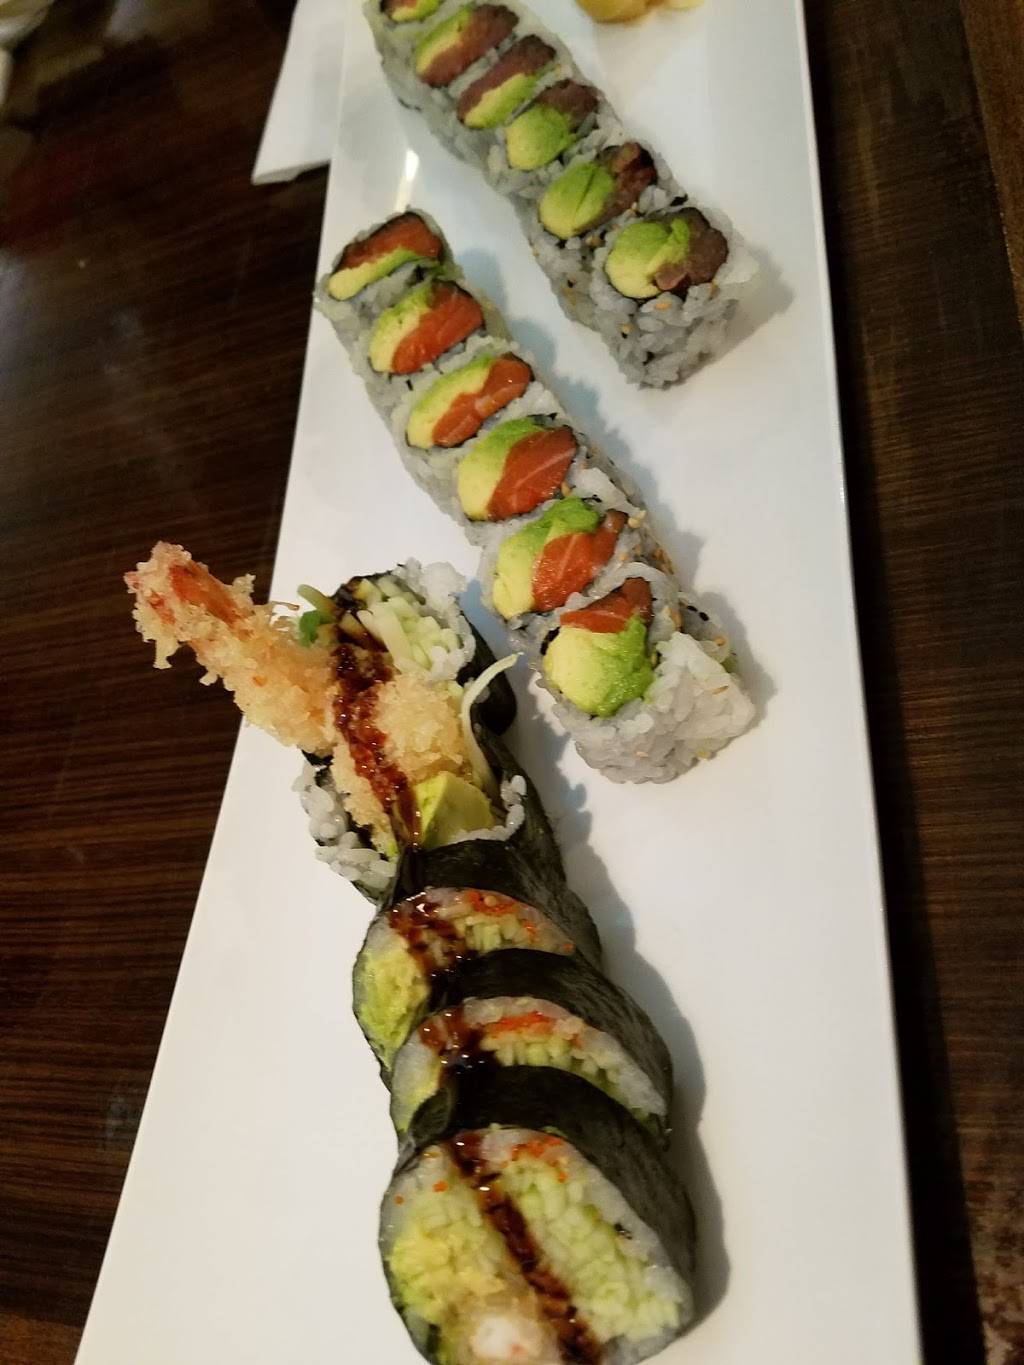 Fuki Sushi | restaurant | 8509 18th Ave, Brooklyn, NY 11214, USA | 7188378885 OR +1 718-837-8885